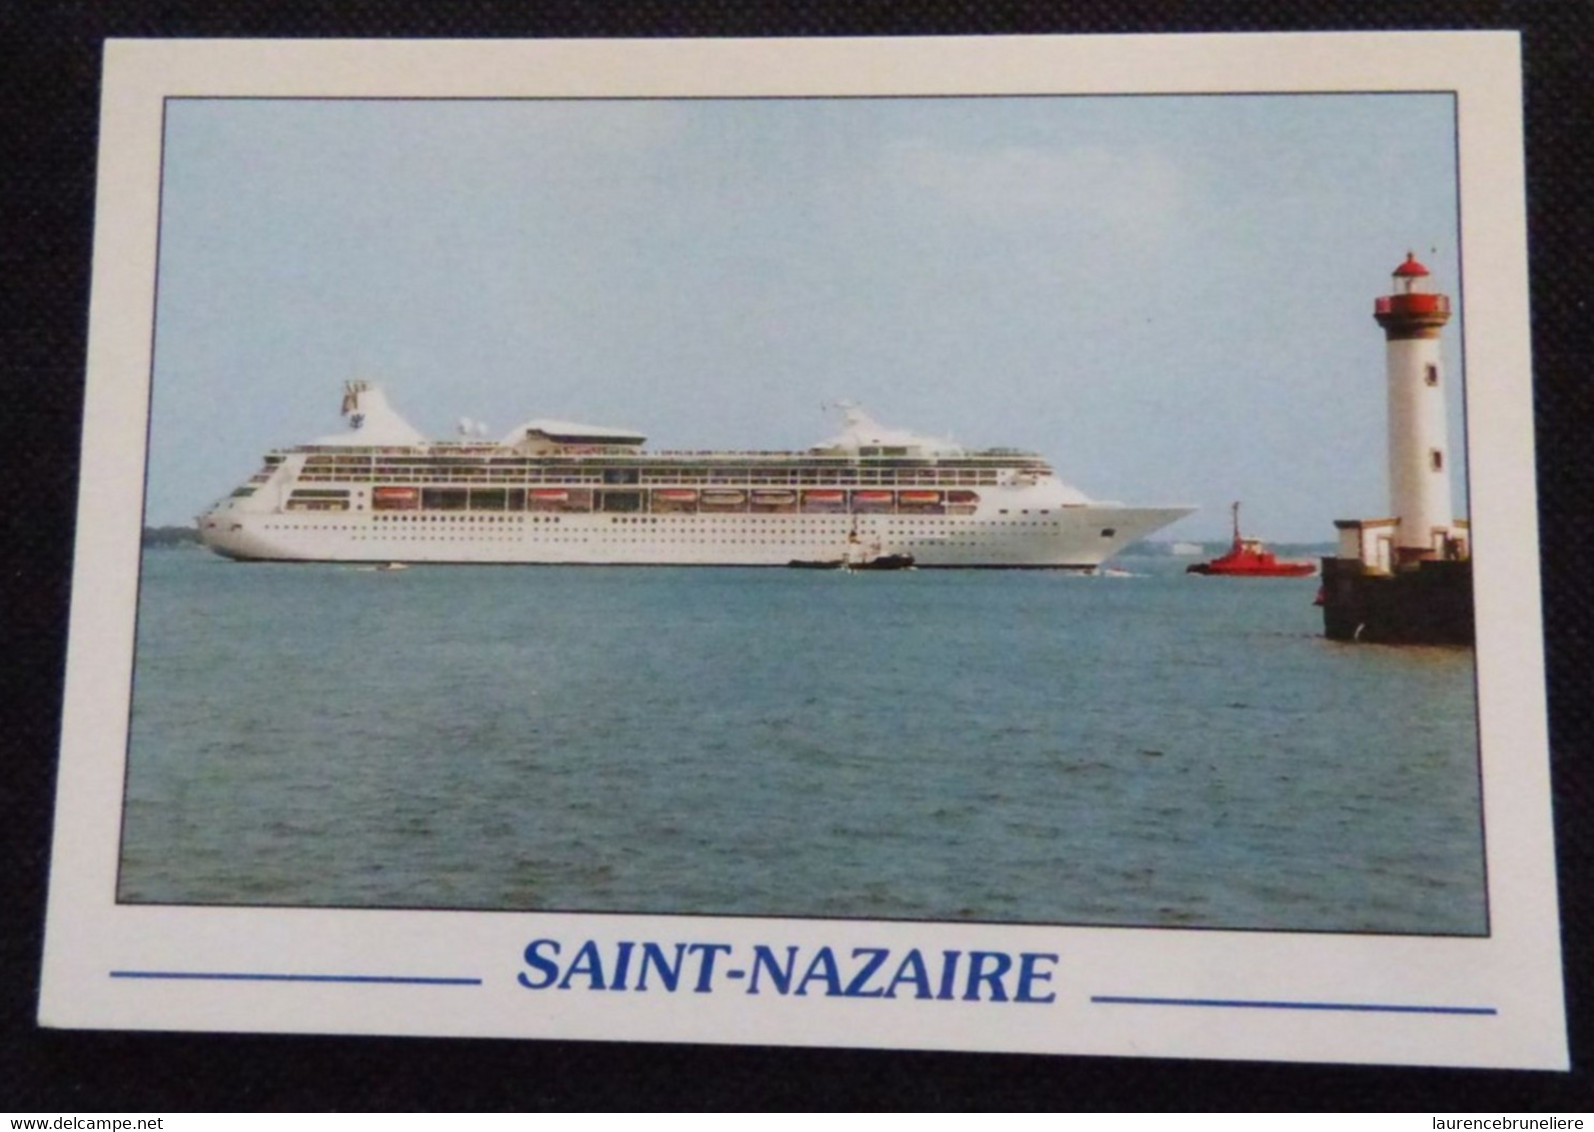 44 -  SAINT-NAZAIRE 44 -  LE RHAPSODY OF THE SEAS CONSTRUIT PAR ALSTOM - Passagiersschepen